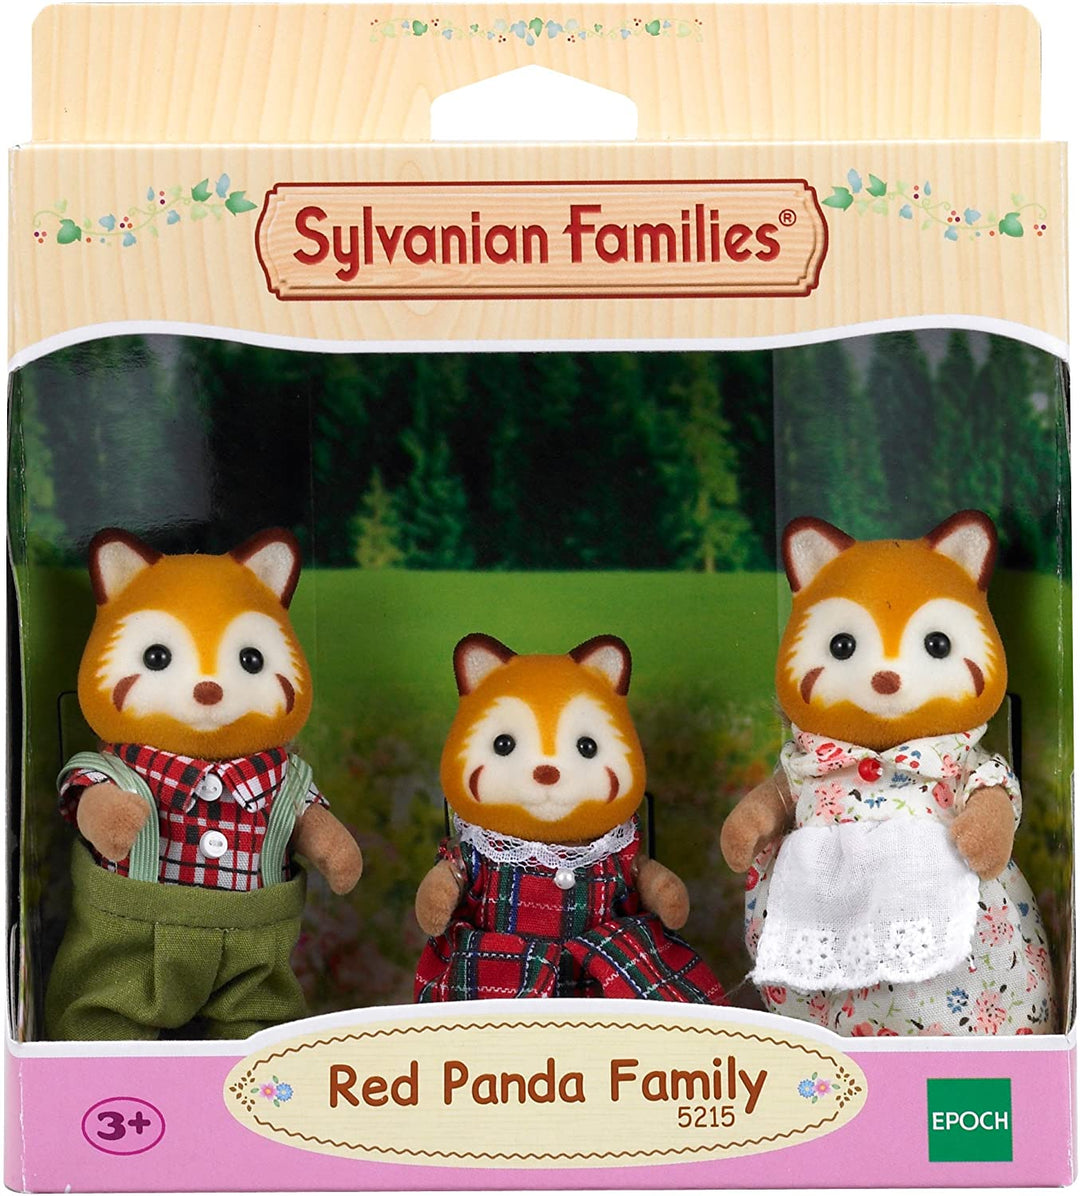 Conjunto familiar panda rojo de Sylvanian Families